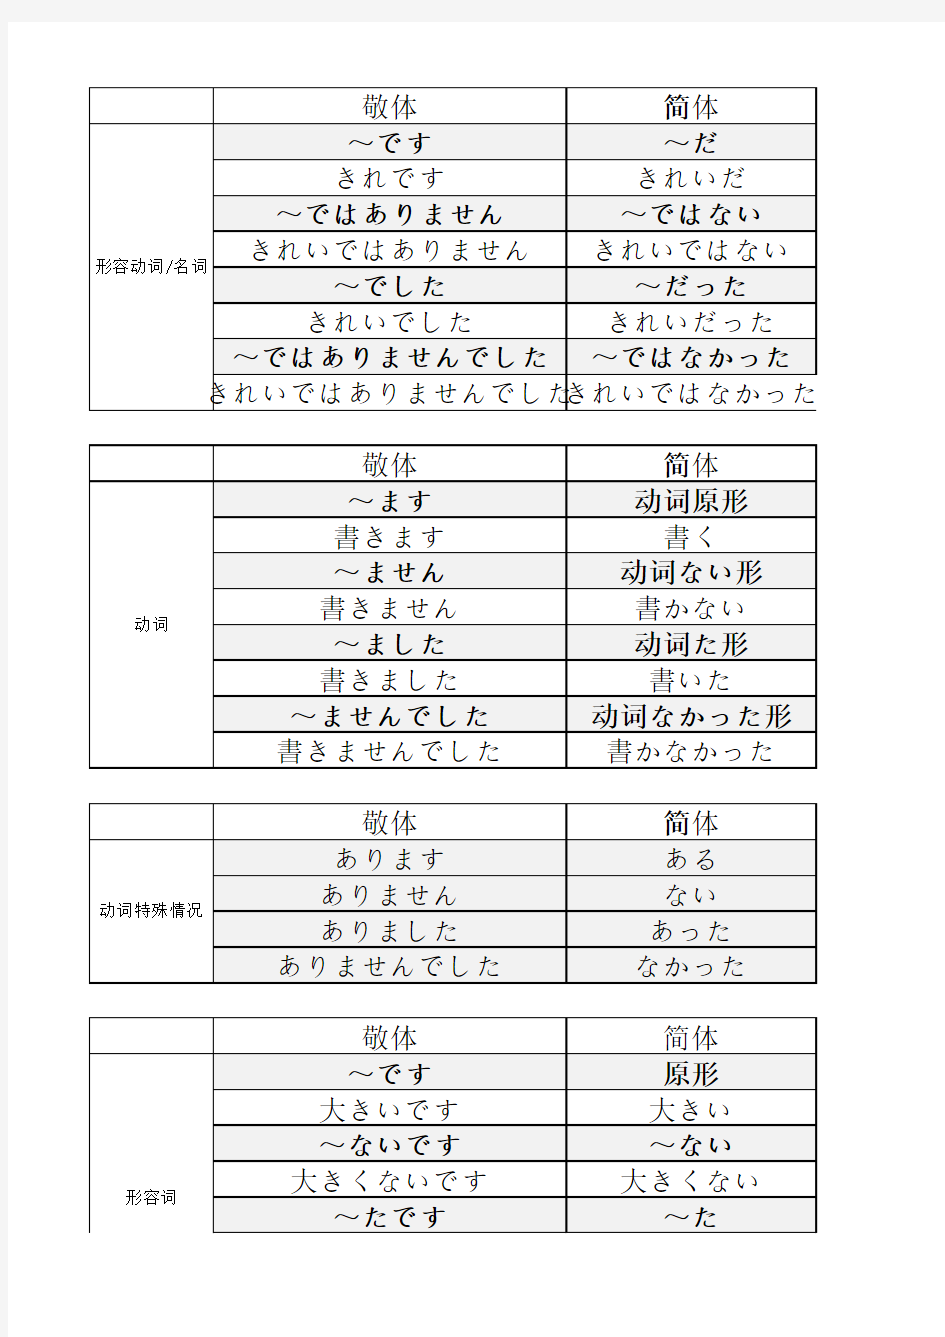 日语时态、动词变形、简体敬体形式总结